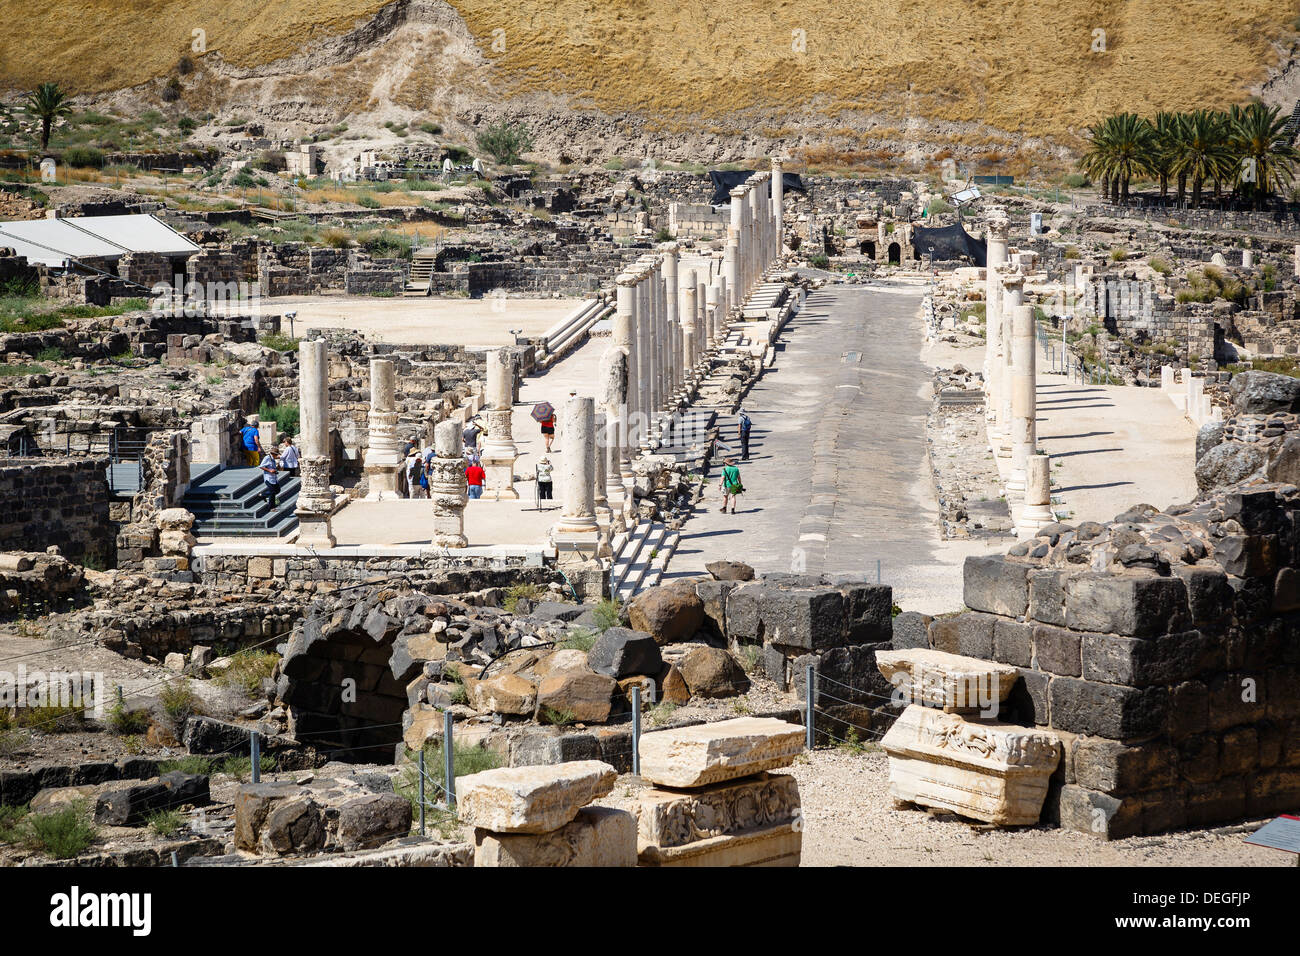 Ruines de l'Roman-Byzantine ville de Scythopolis, tel le parc national de Beit Shean, Beit Shean, Israël, Moyen Orient Banque D'Images